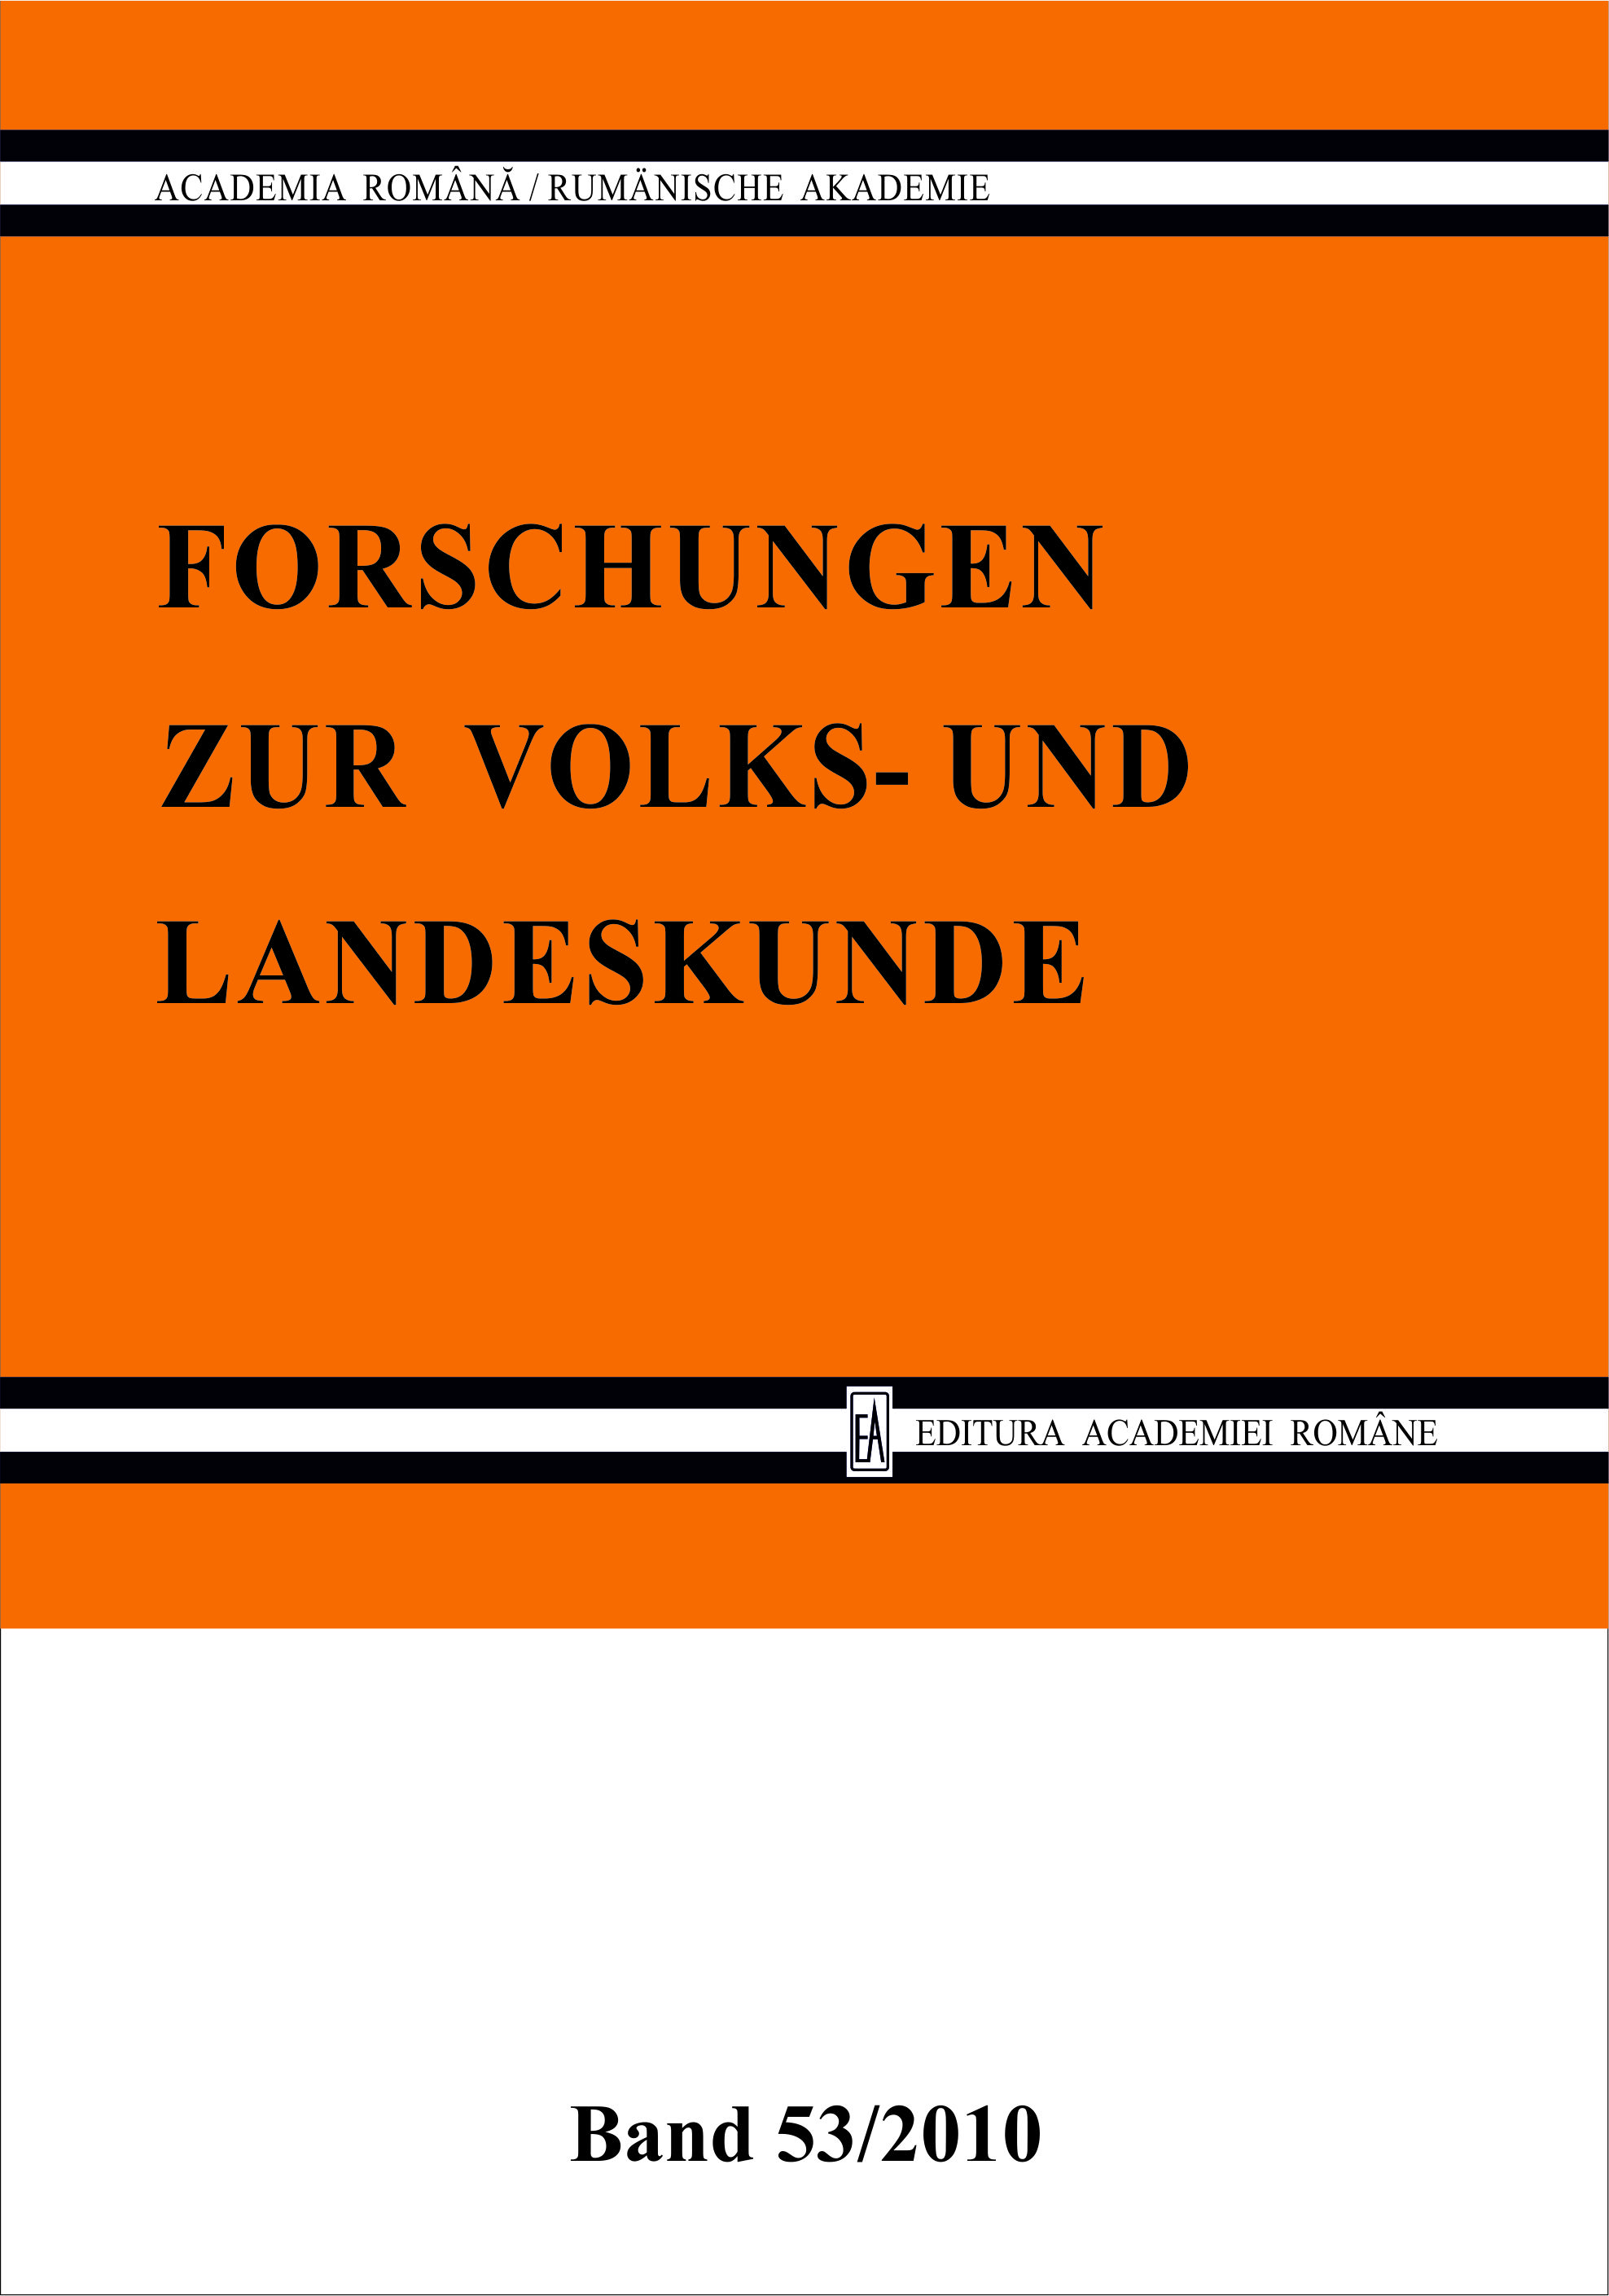 Die deutschen Publikationen im sozialistischen Rumänien (1949-1989), ein Mittel zur Bewahrung der ethnischen Identität